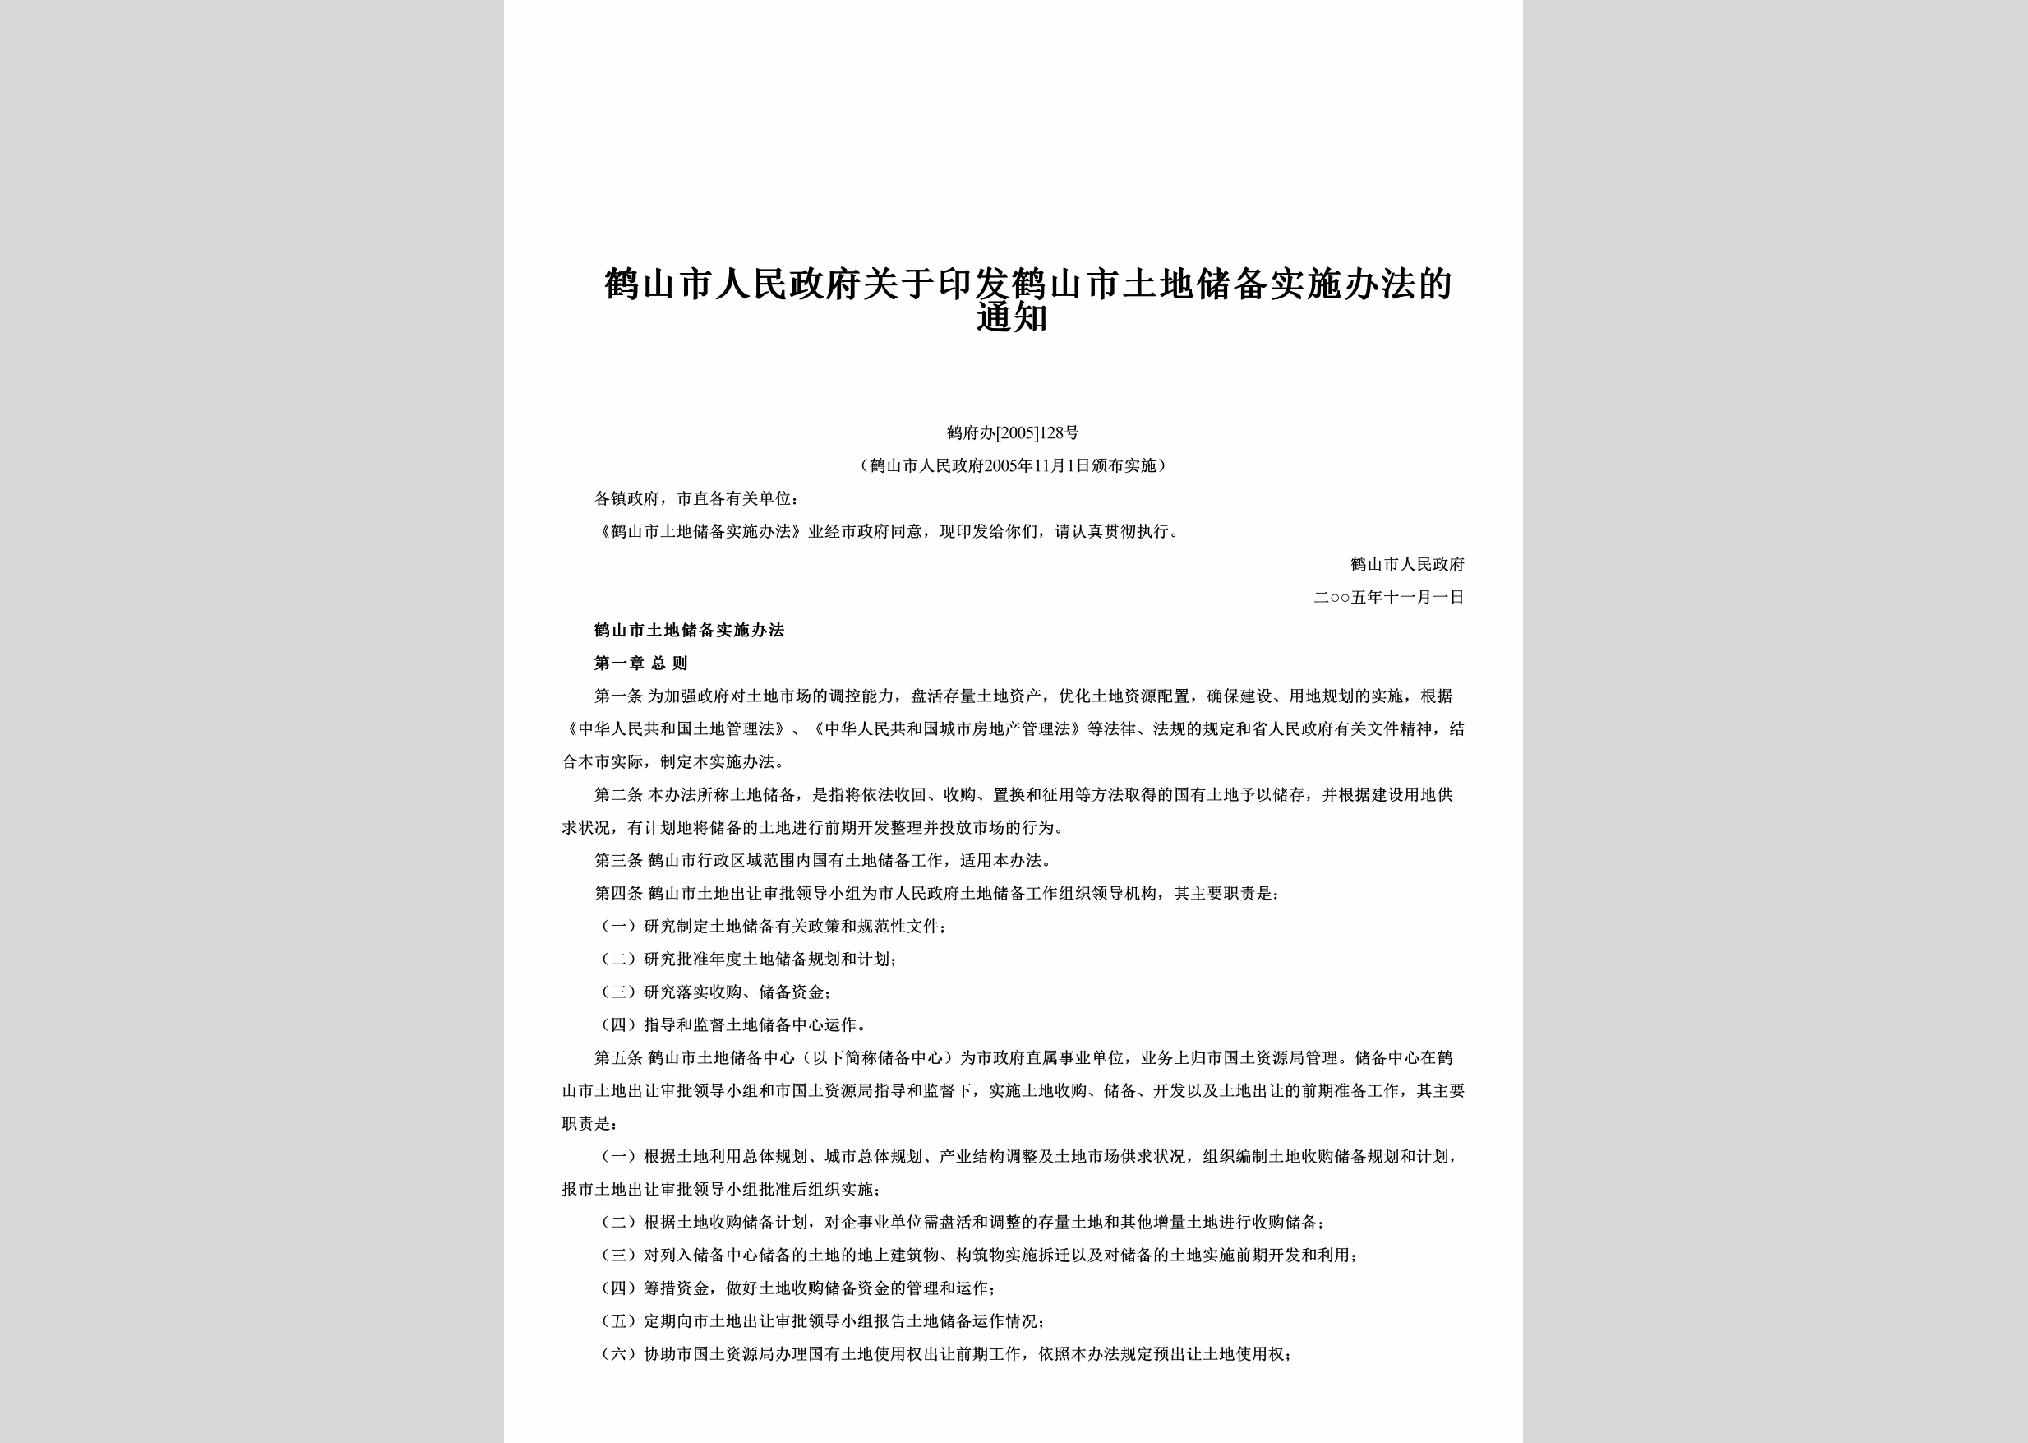 鹤府办[2005]128号：关于印发鹤山市土地储备实施办法的通知